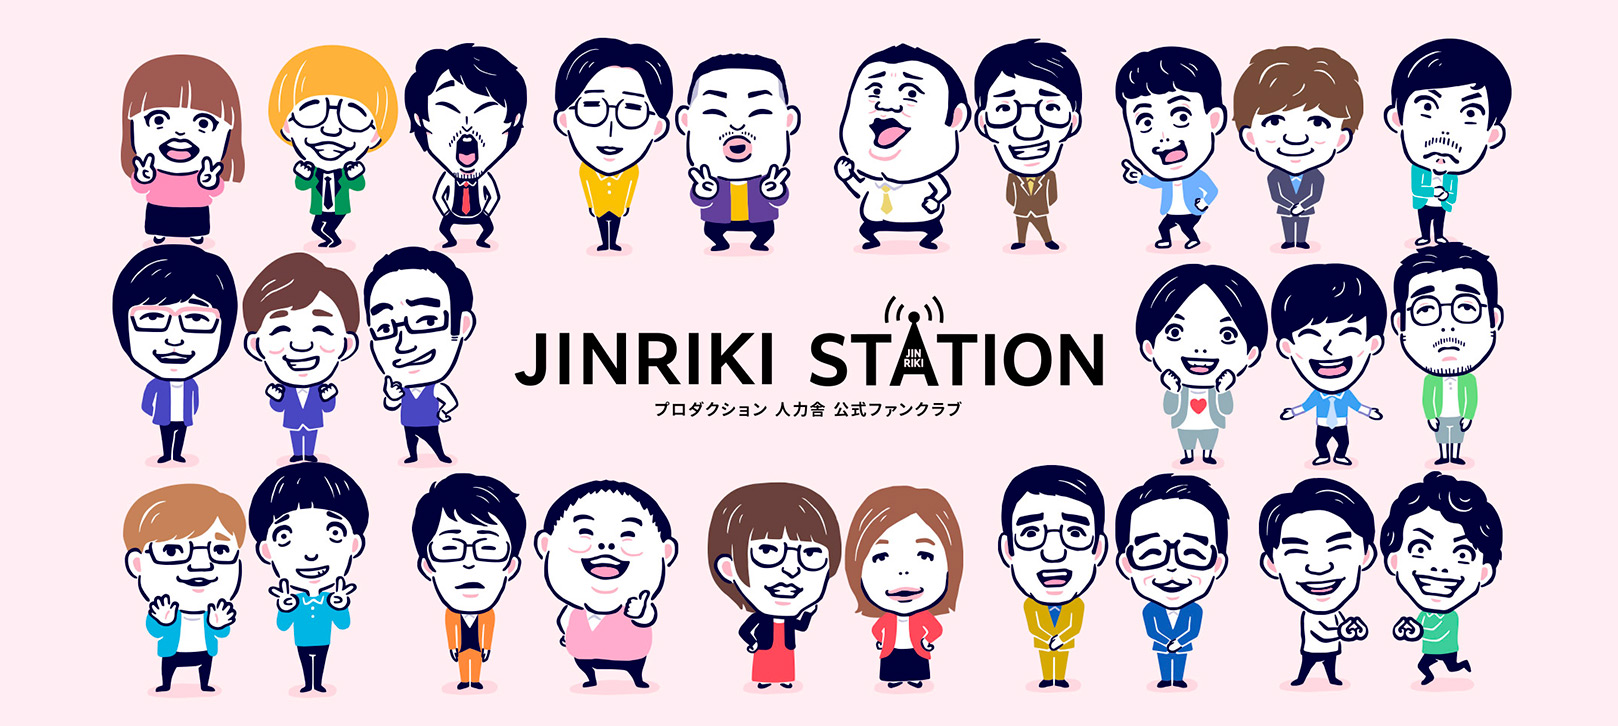 人力舎公式ファンクラブサイト「JINRIKI STATION」